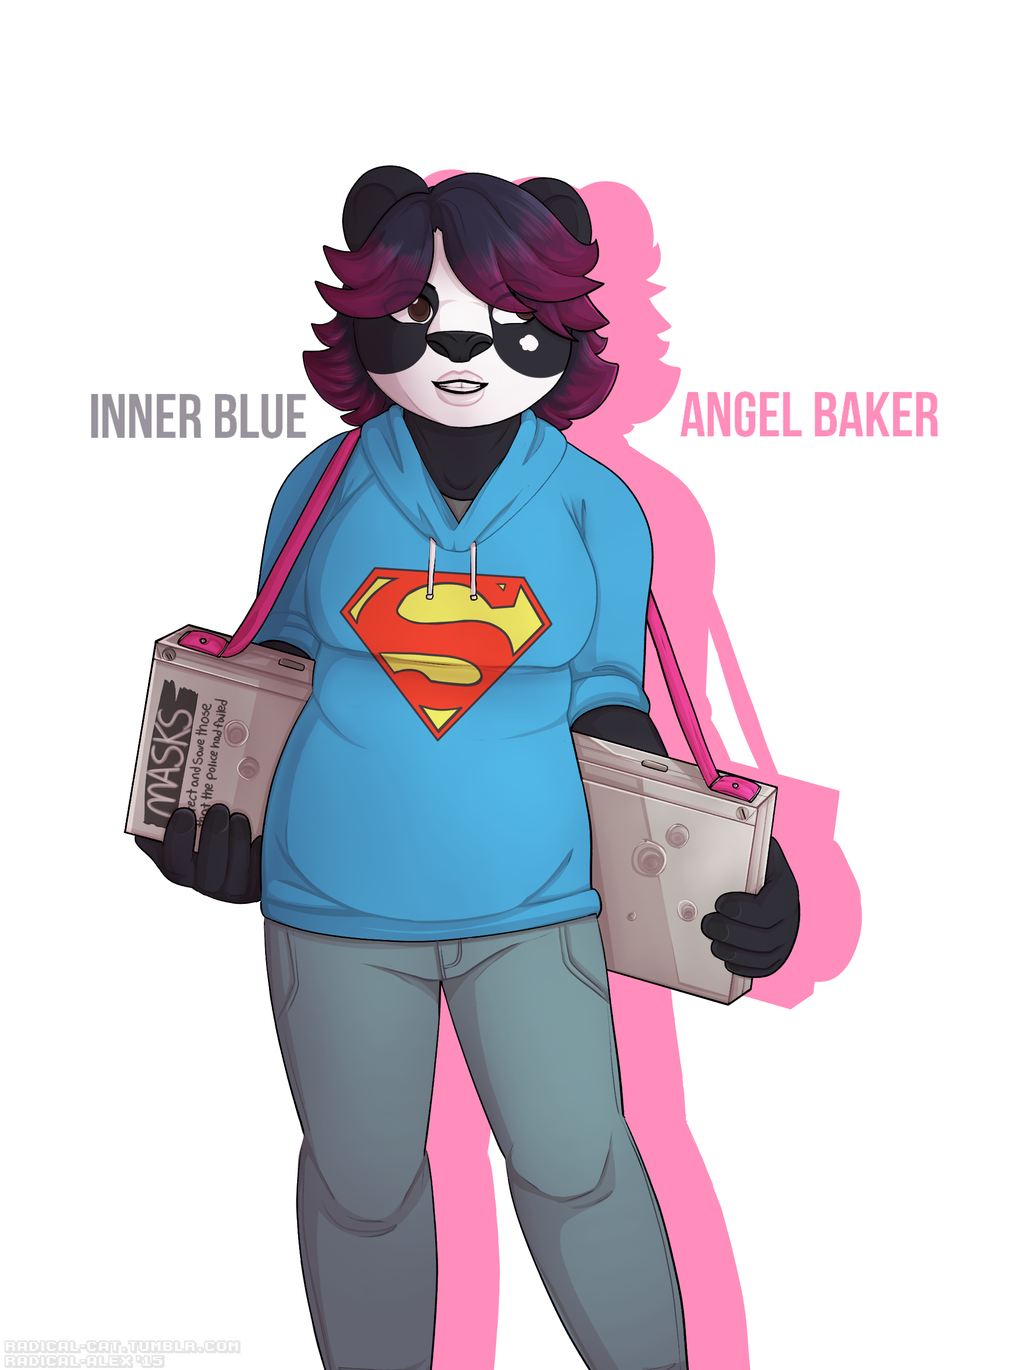 INNER BLUE: Angel Baker